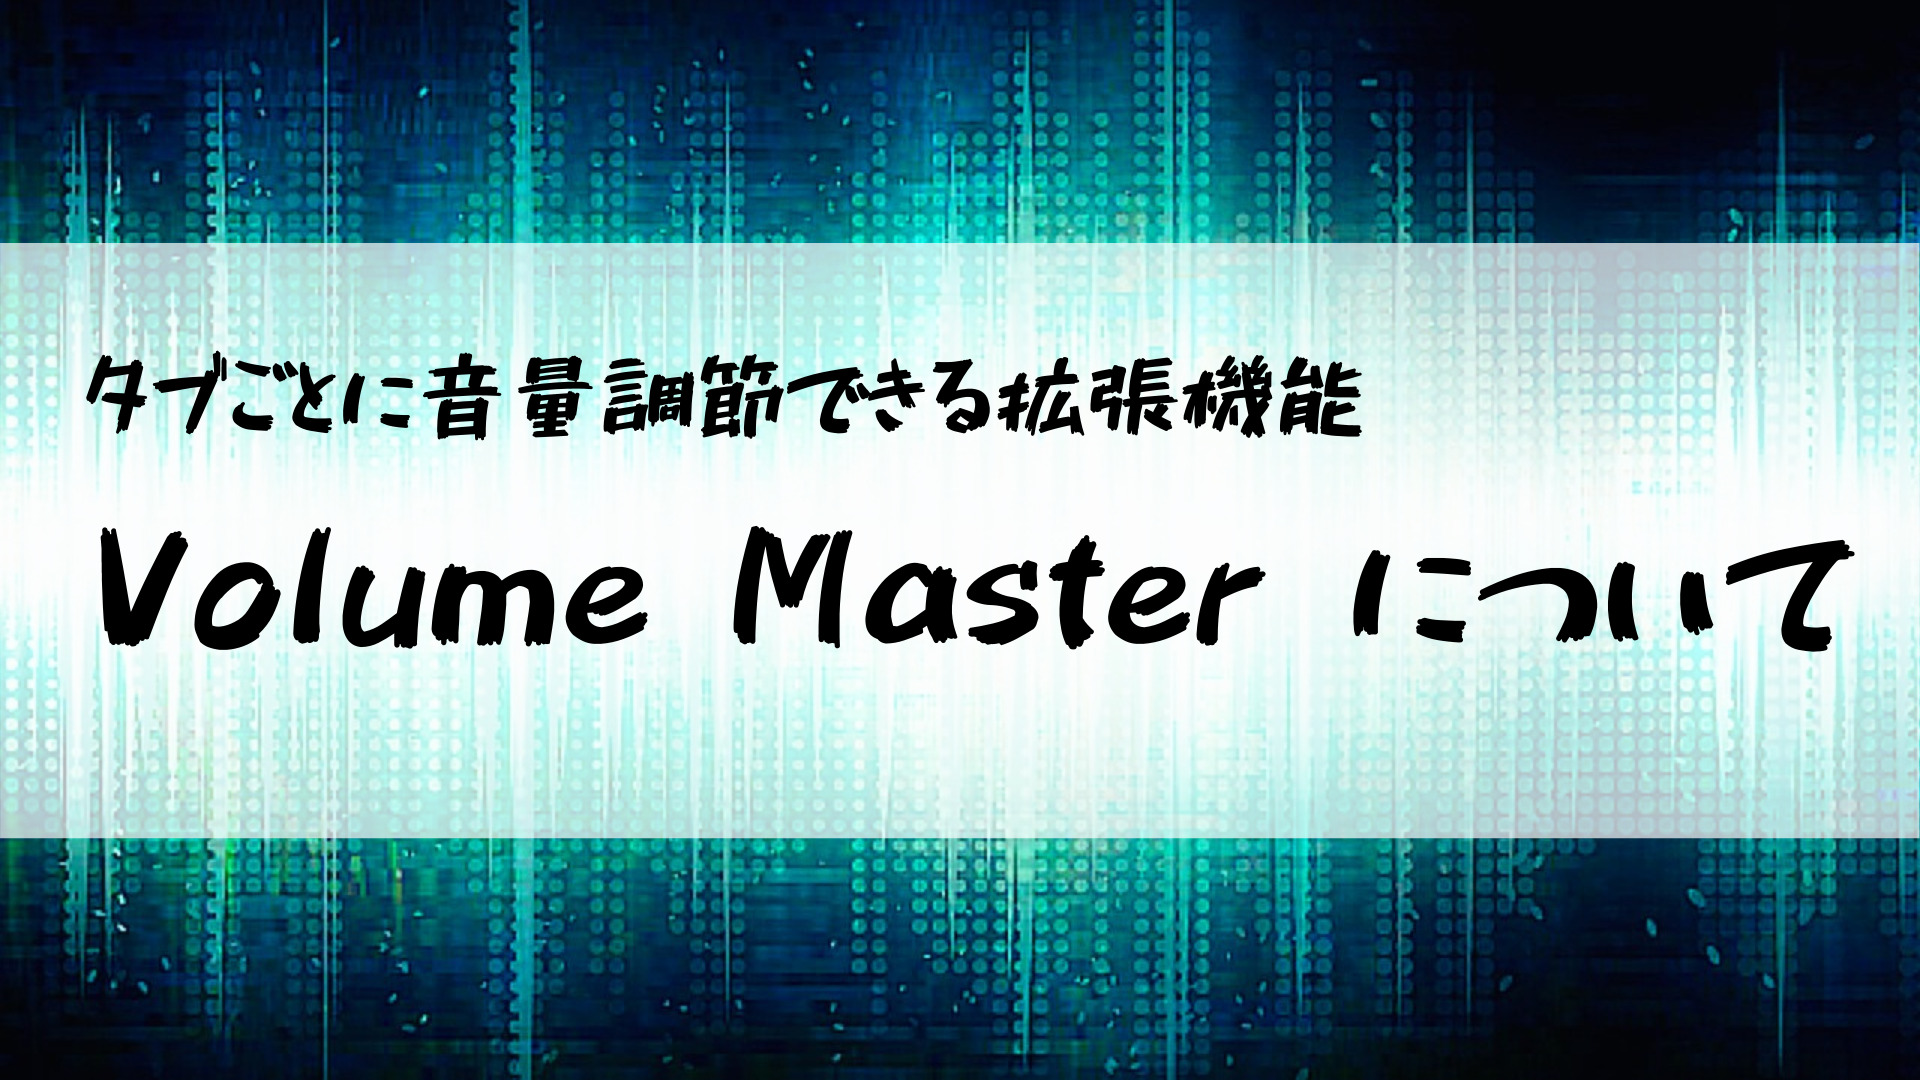 Volume Master について-タイトル